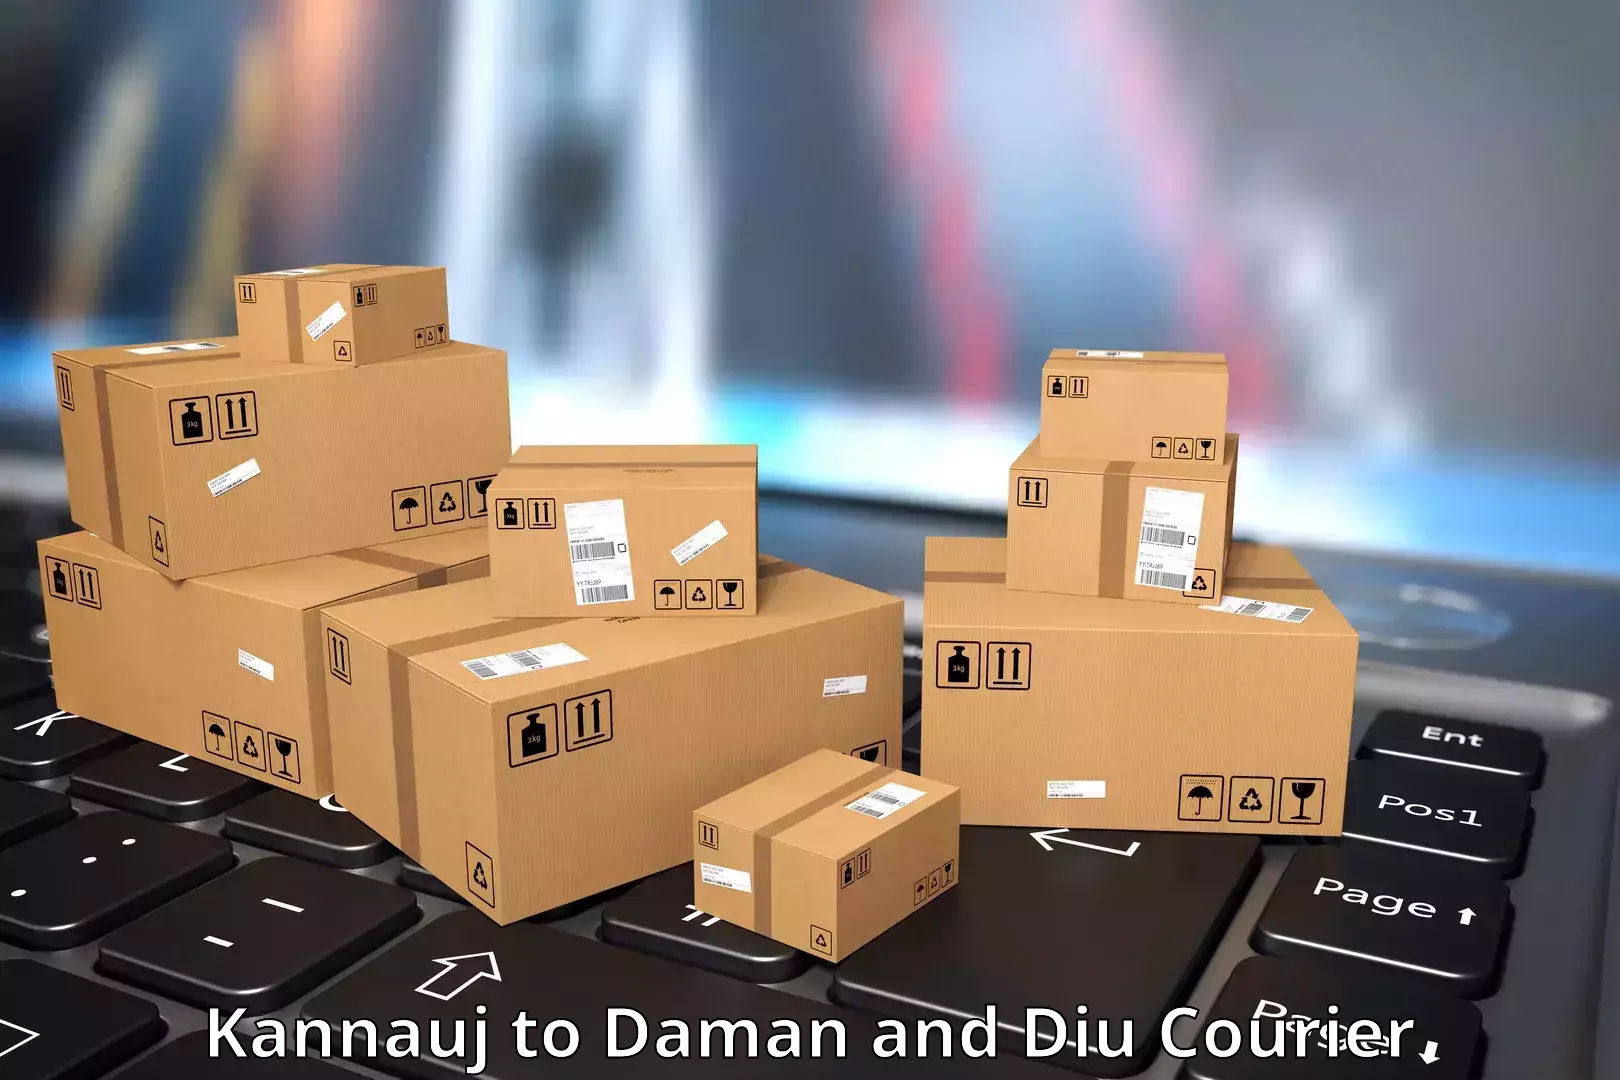 Express courier capabilities Kannauj to Diu